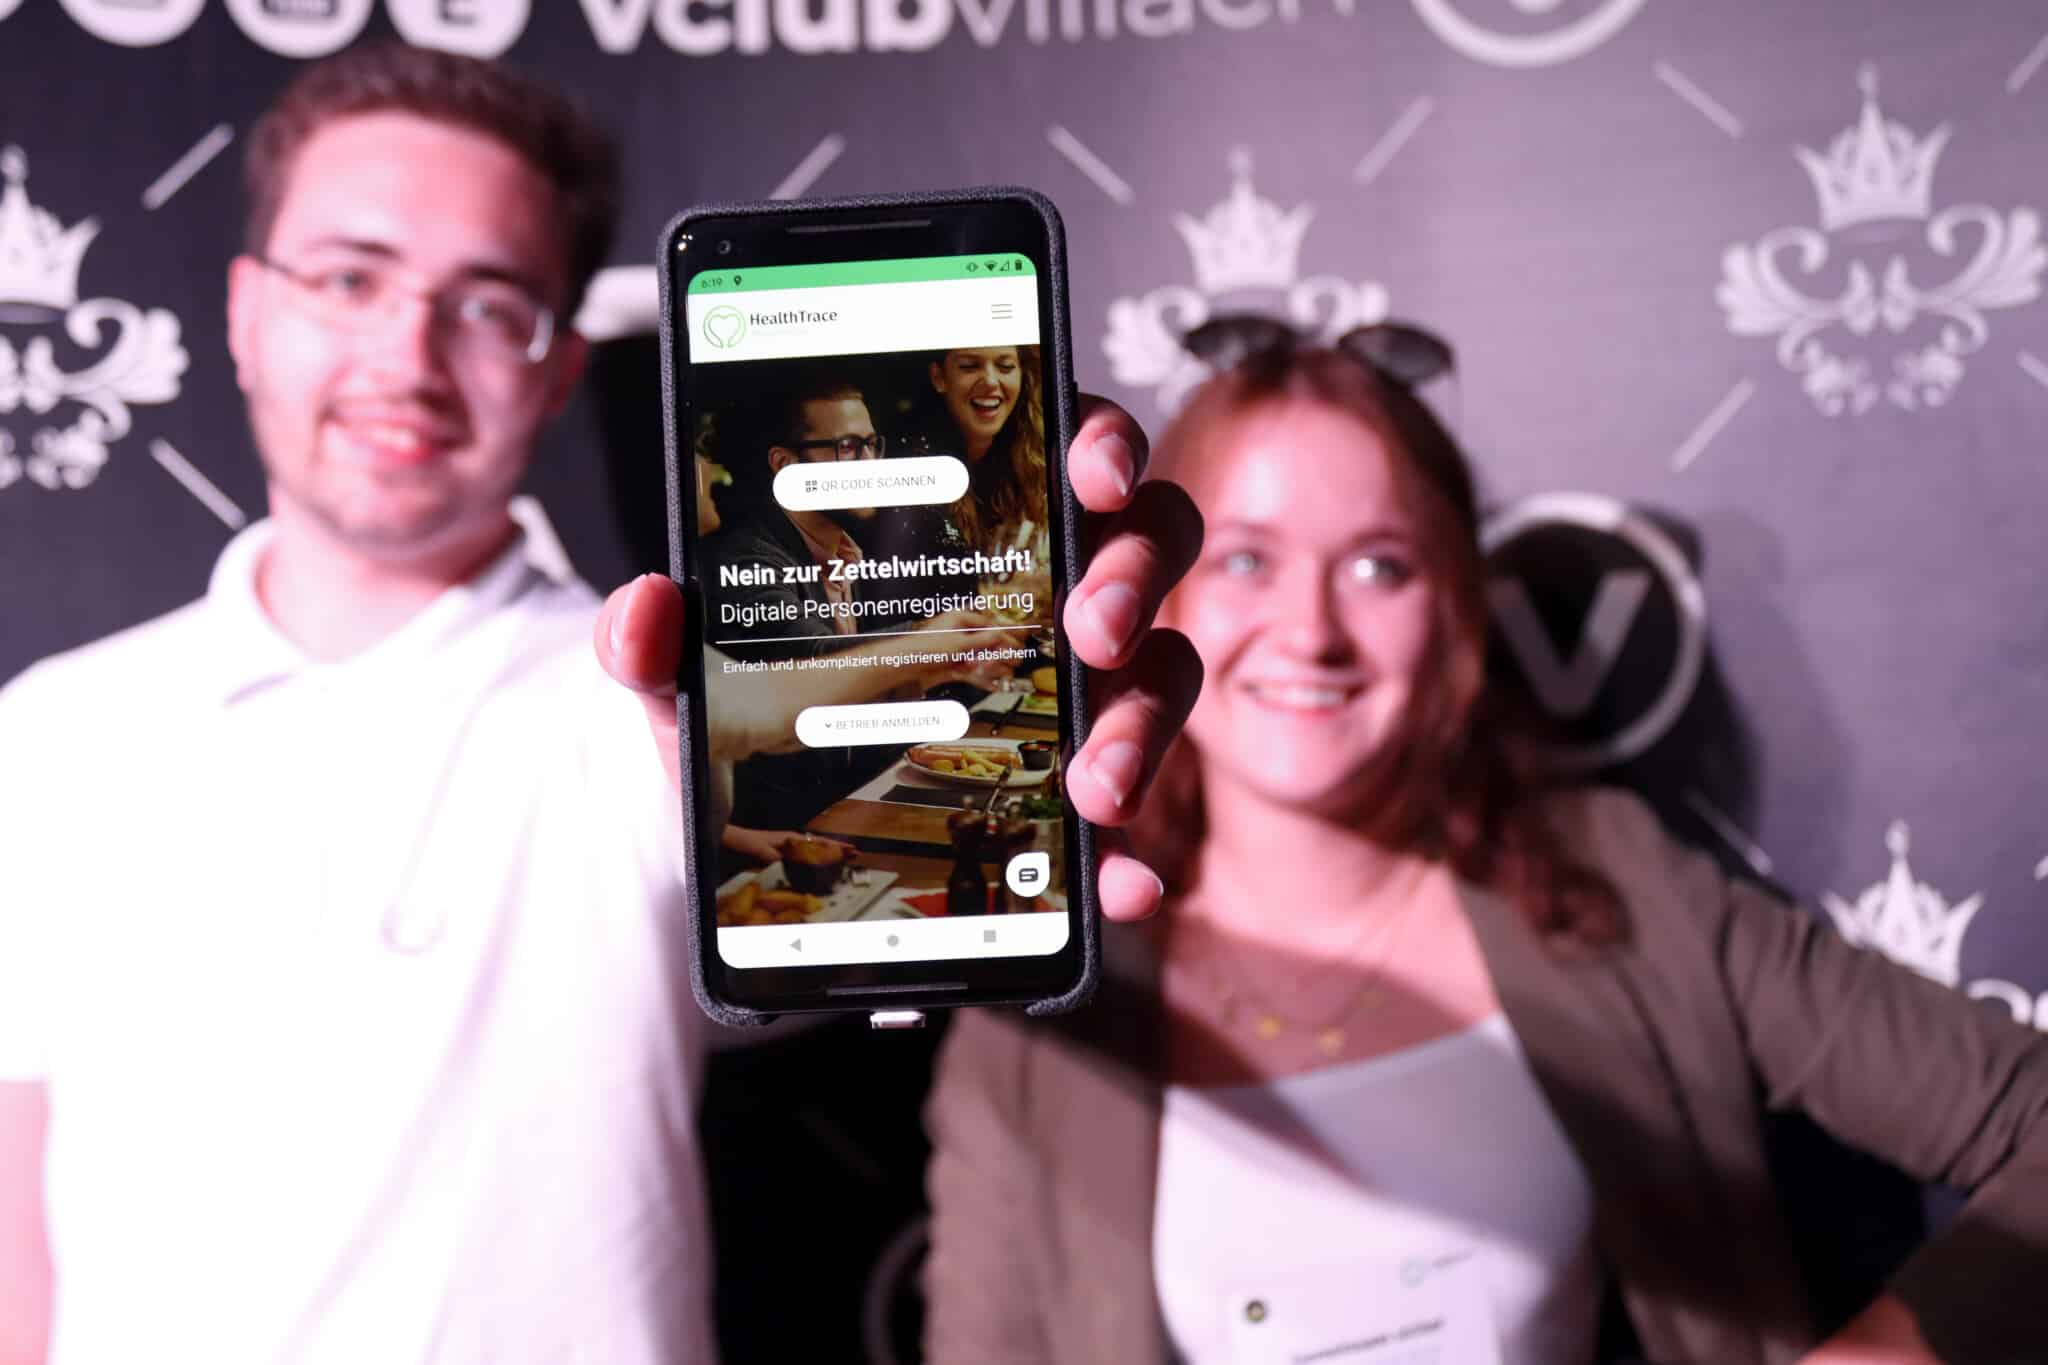 Die Kärntner Digitalagentur “InspireMedia” sucht Verstärkung. Kürzlich startete man erfolgreich eine App zum Contact-Tracing im Gastronomiebereich in Österreich (www.healthtrace.at).